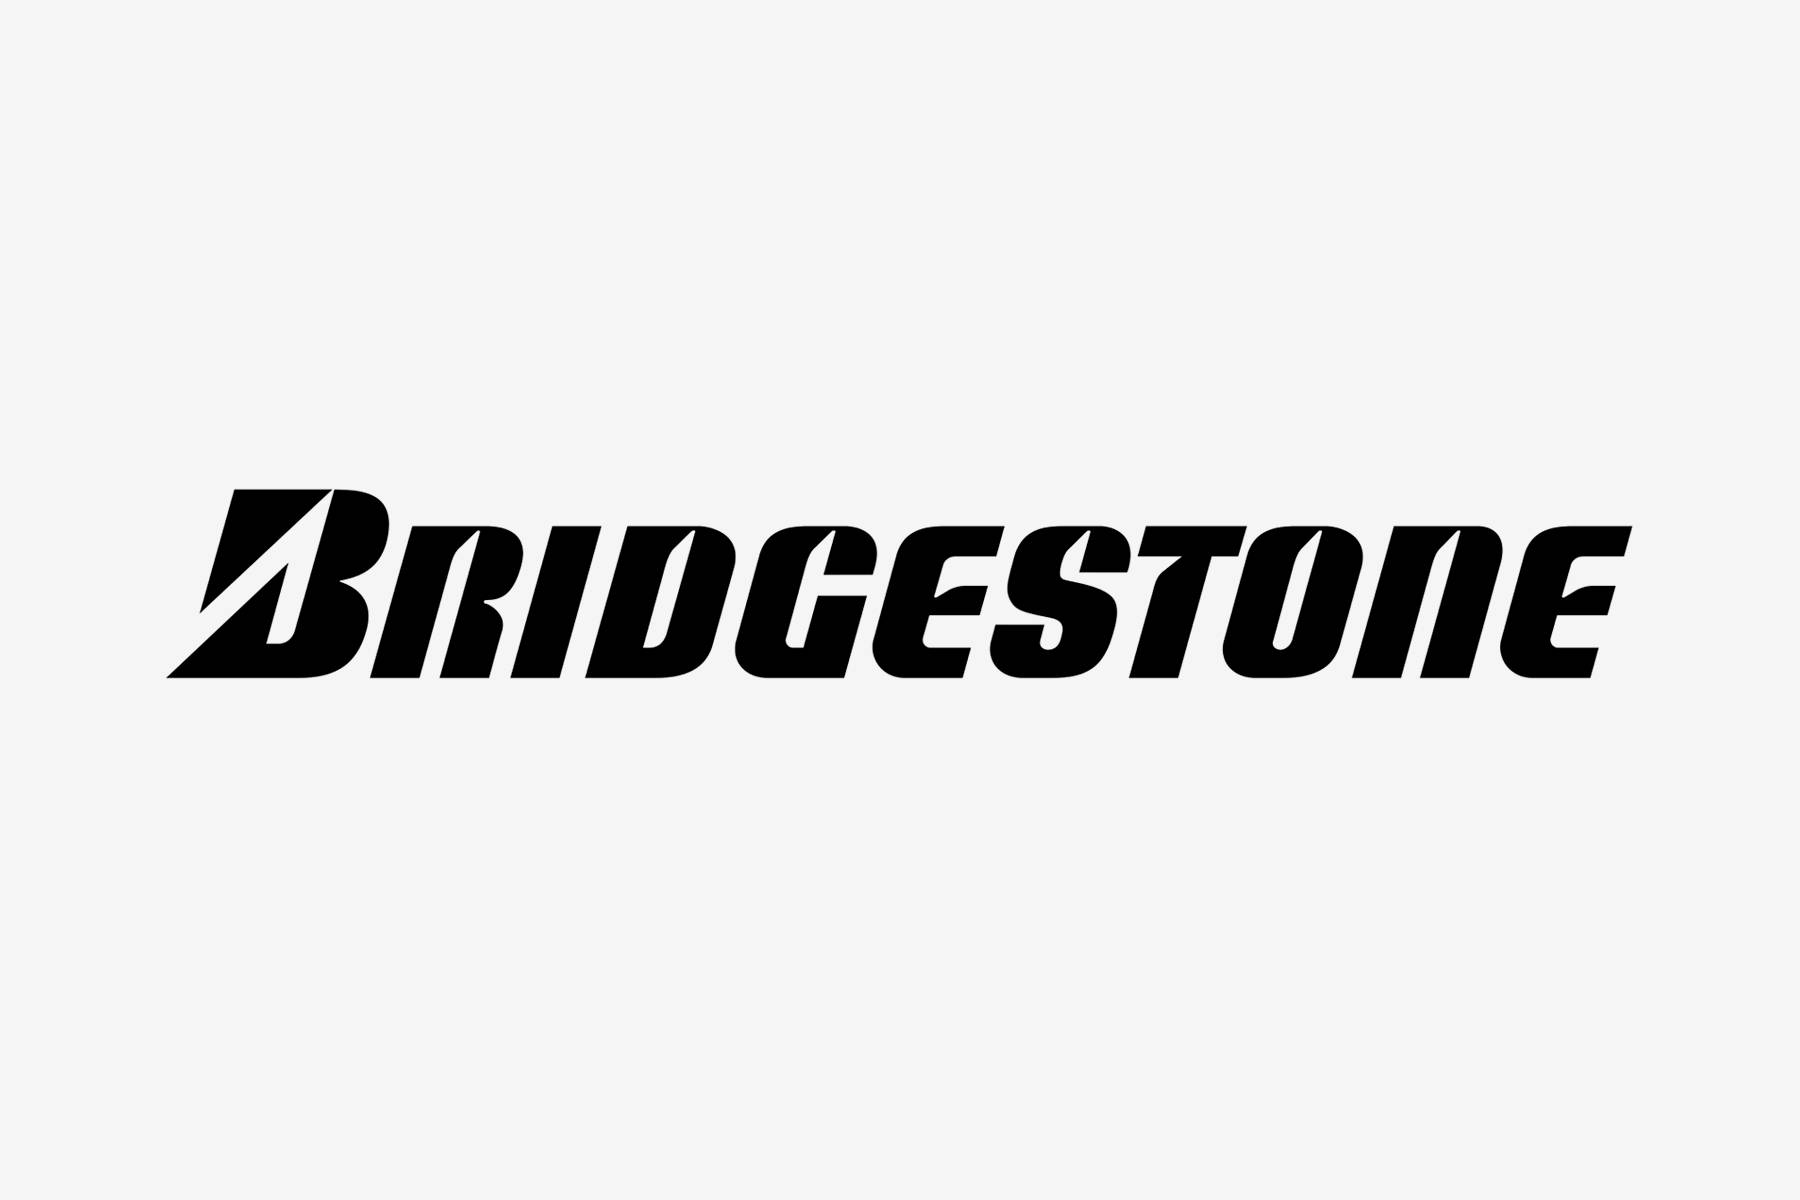 Bridgestone 1800 X 1200 Wallpaper